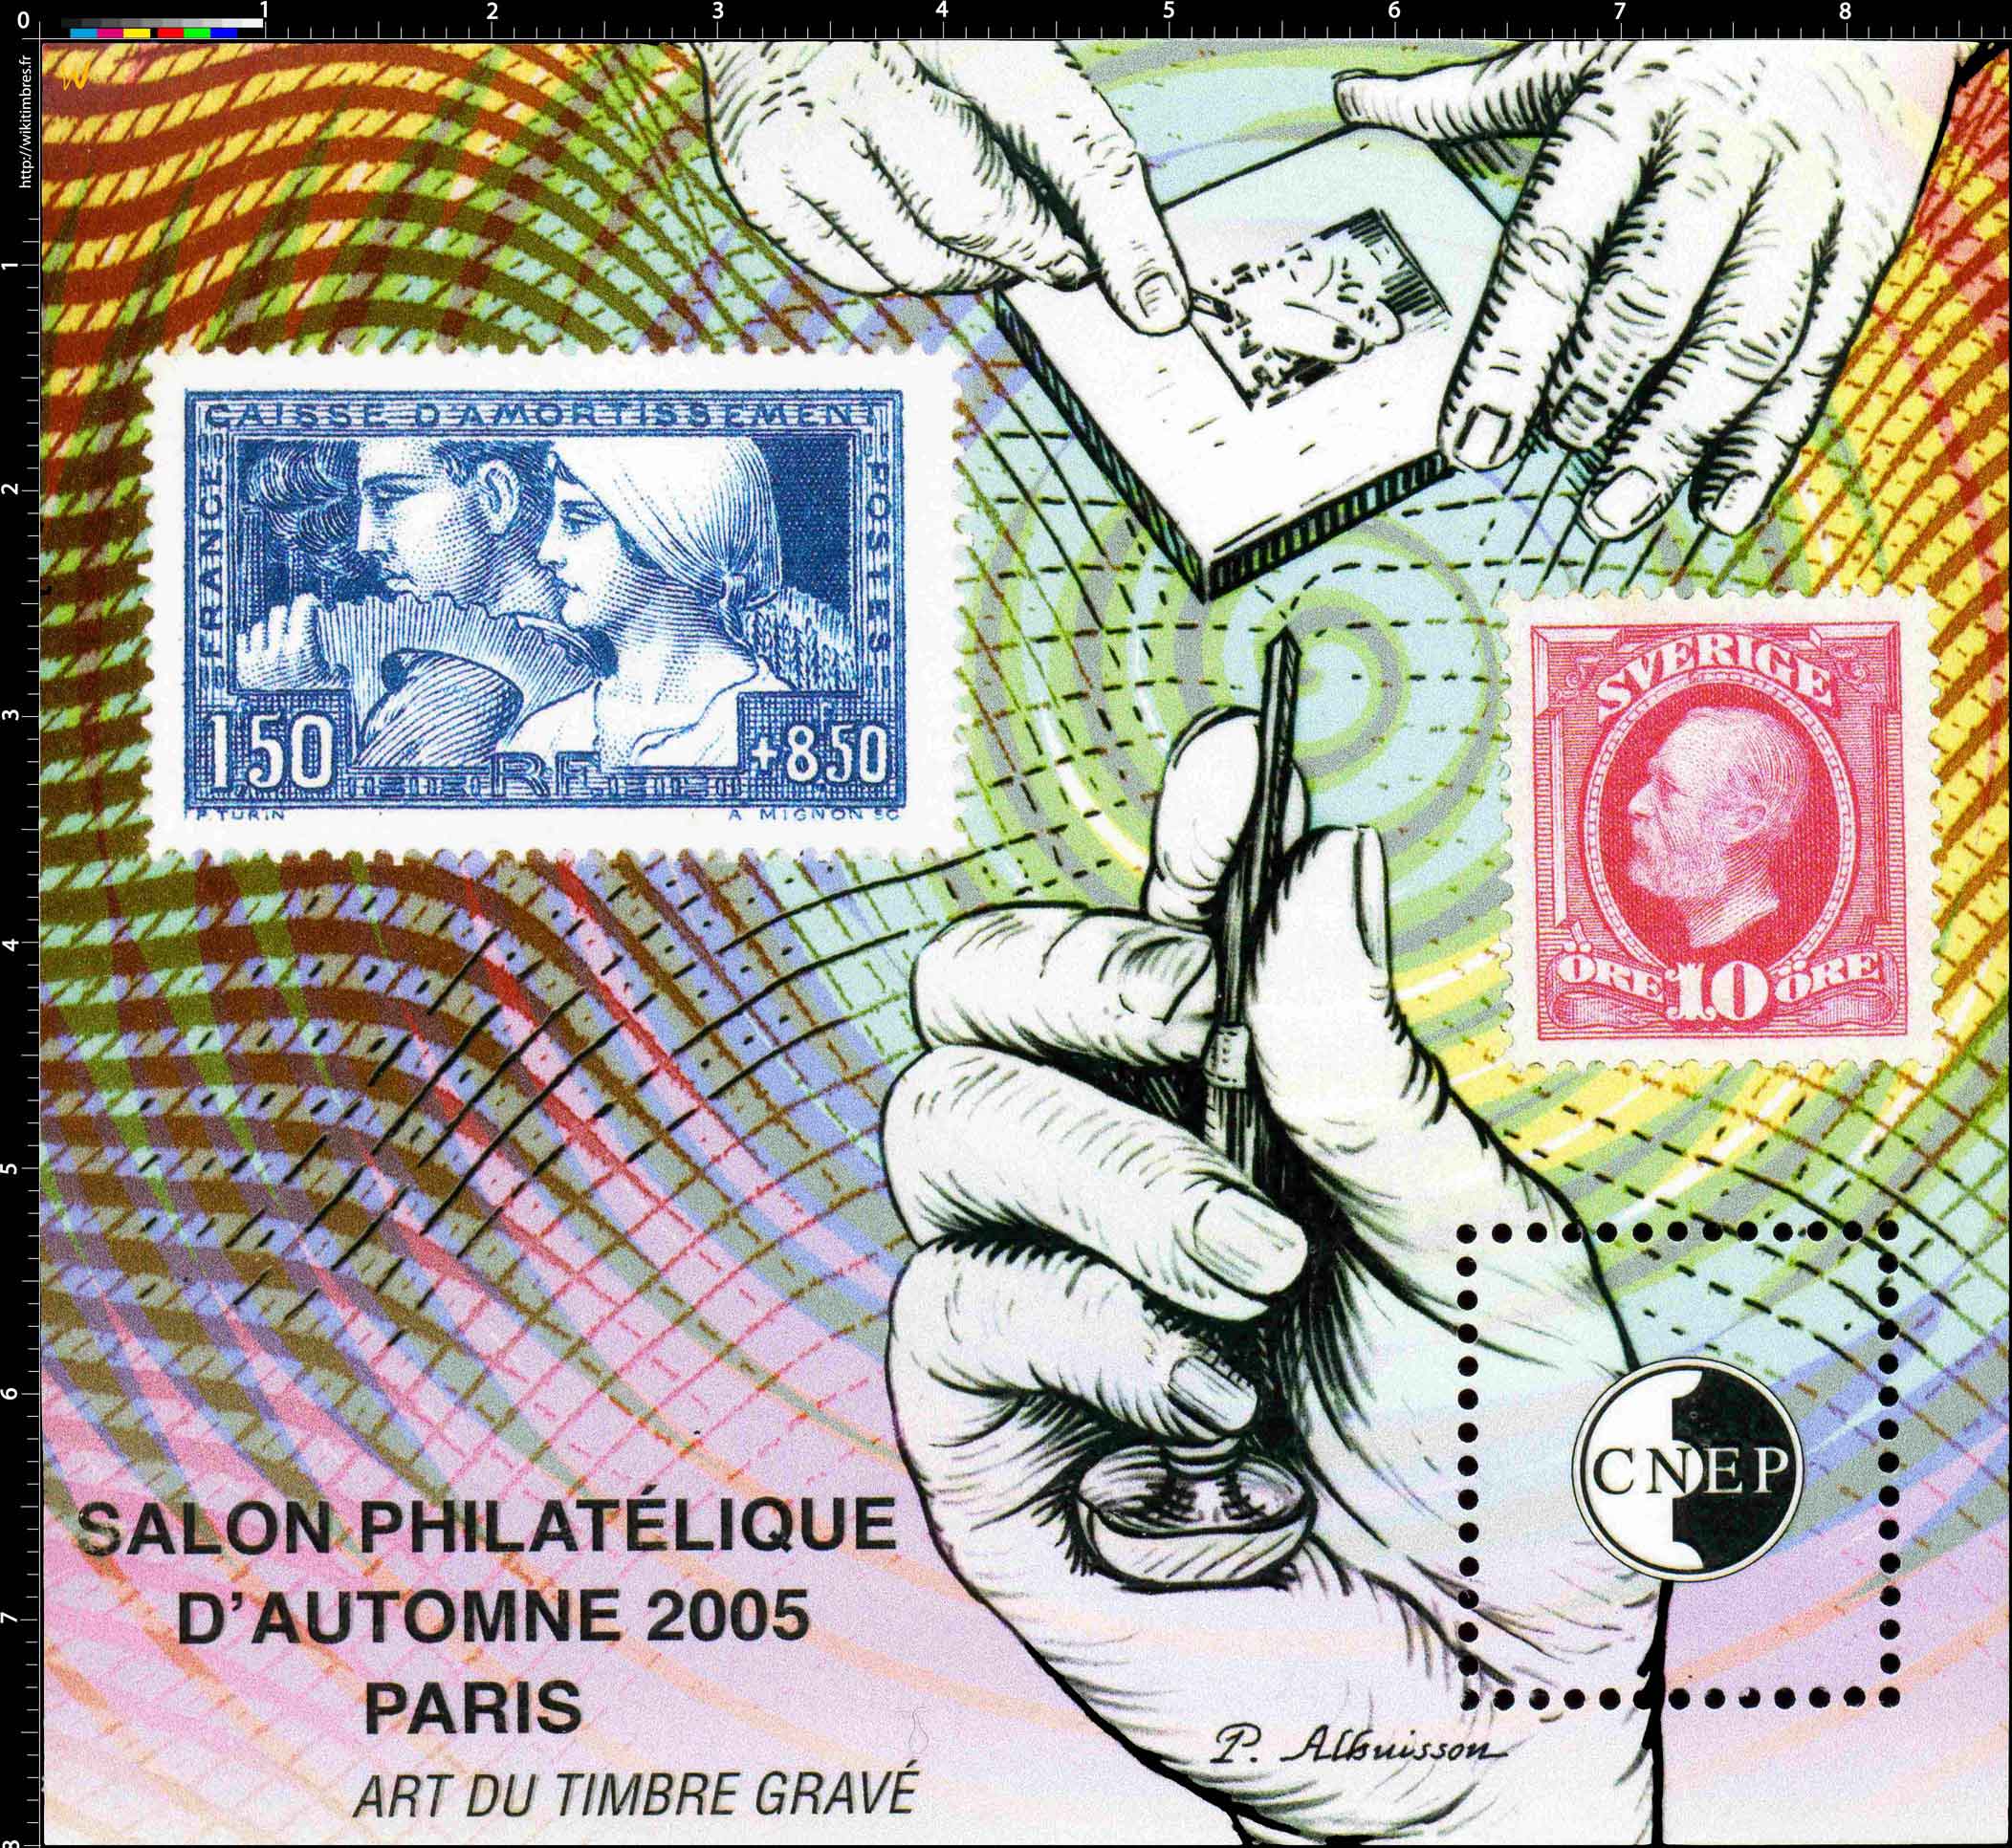 2005 Salon philatélique d'automne Paris CNEP Art du timbre gravé